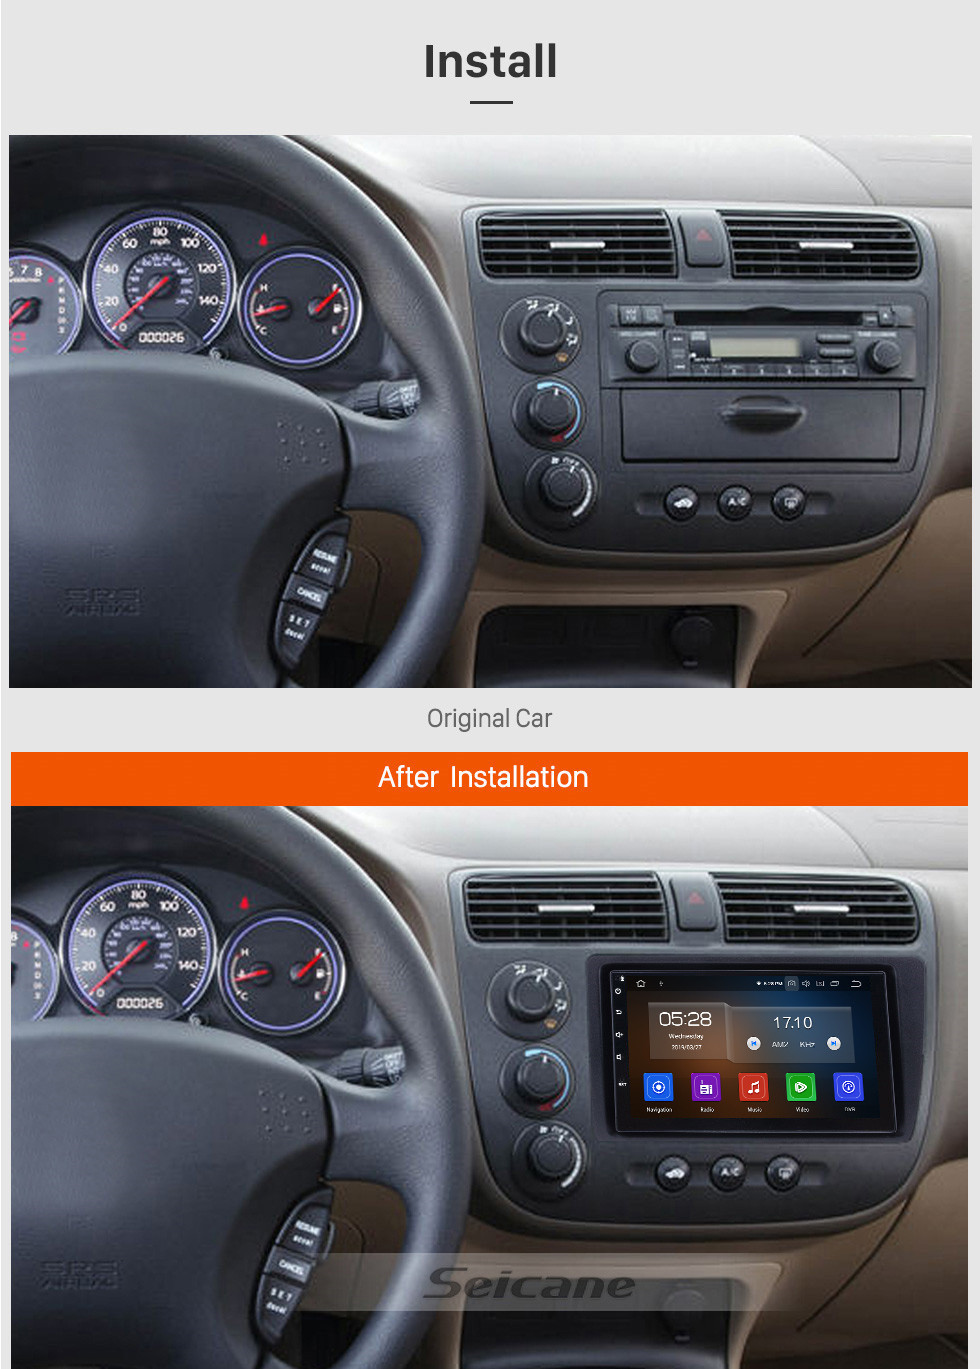 Seicane Multi-touch Android 9.0 Unidade Principal GPS para 2001-2005 Honda Civic com Rádio RDS 3G WiFi Bluetooth 1080 P Espelho Link OBD2